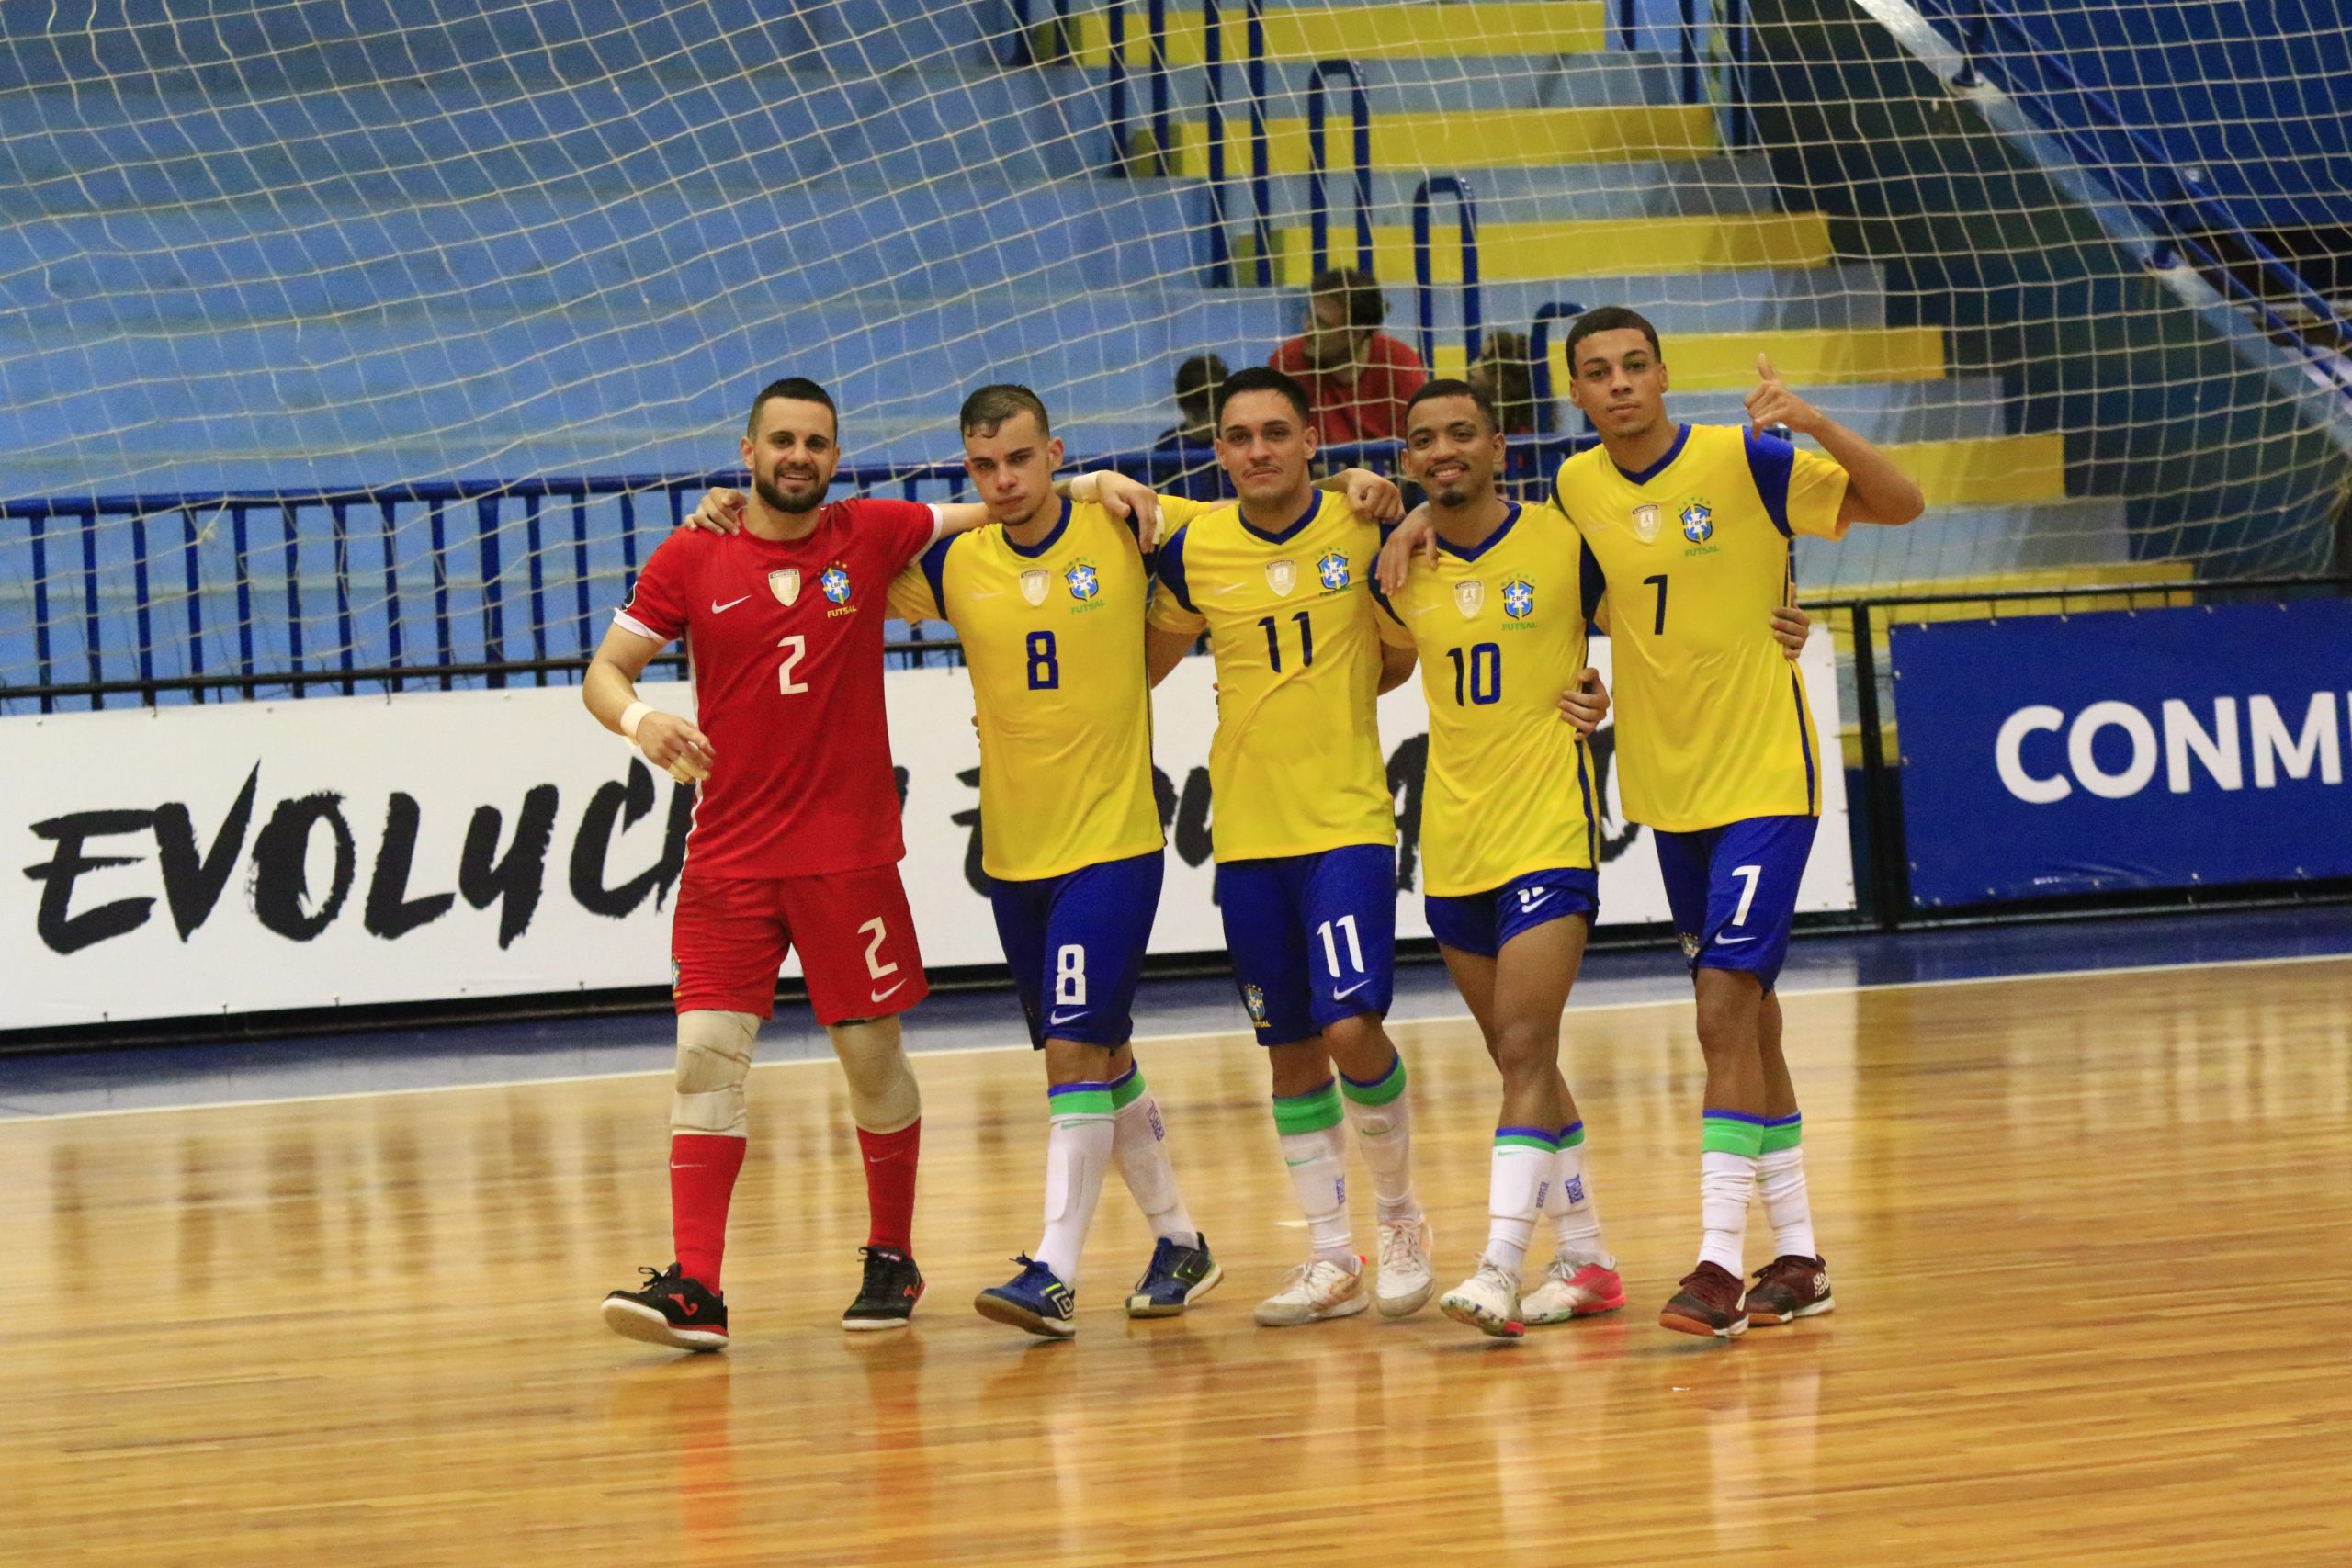 1º Torneio da Região Central de Futsal Categoria de Base